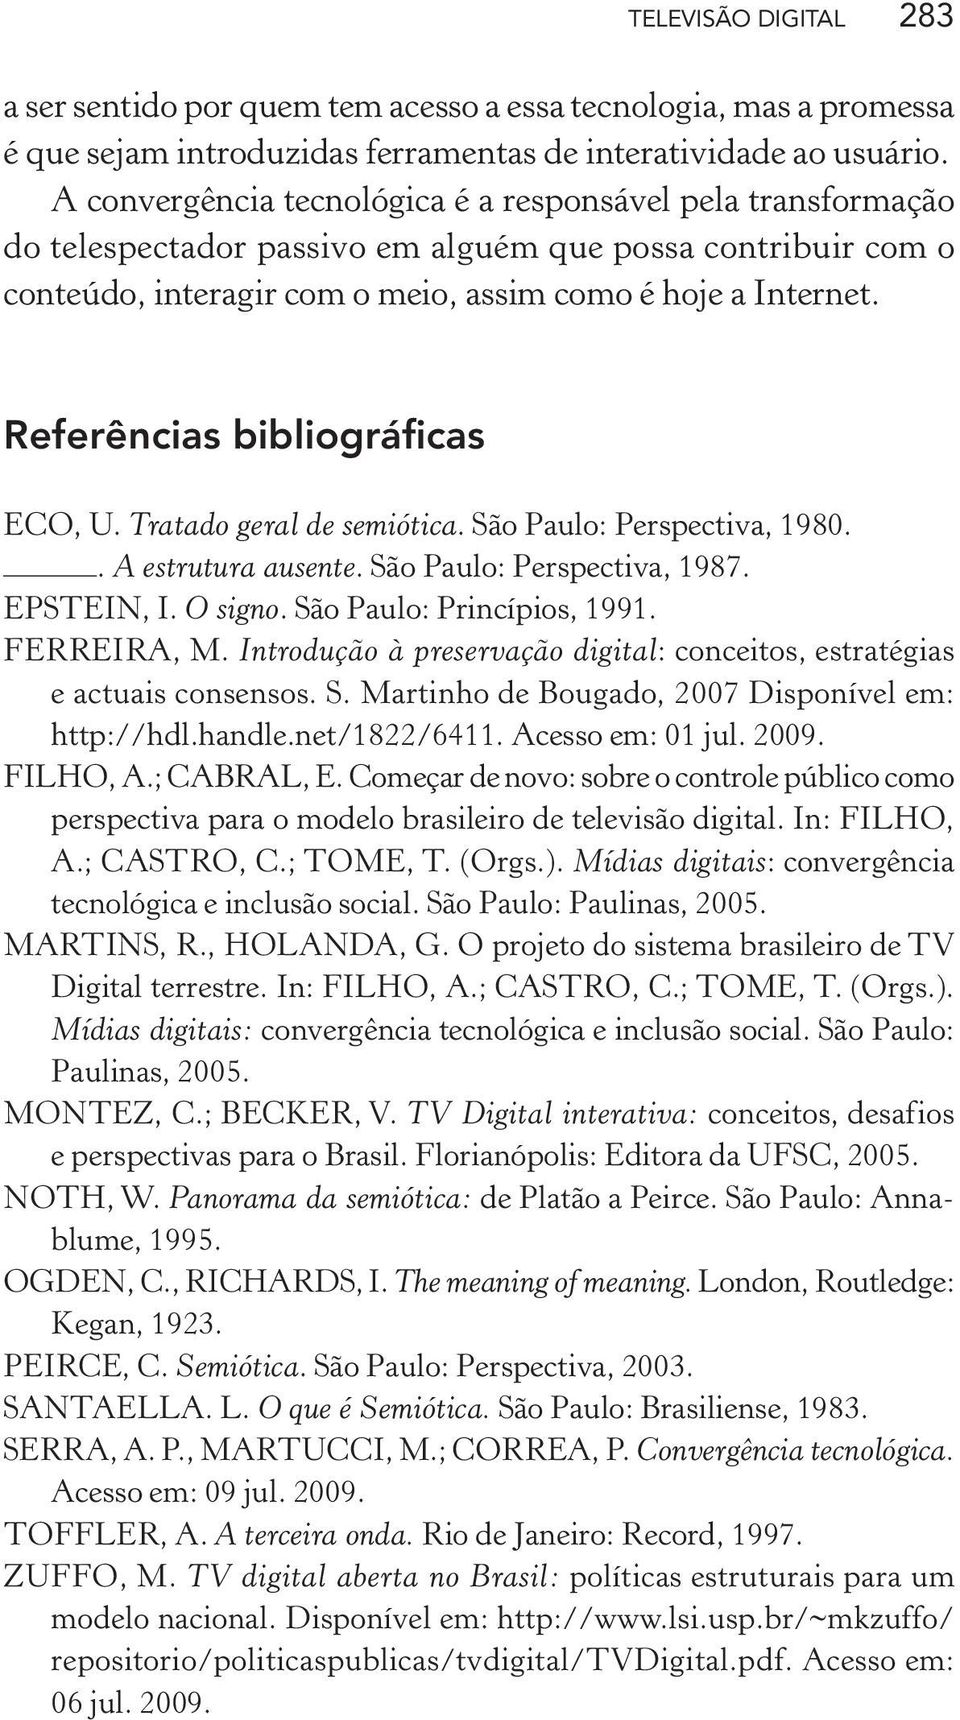 Referências bibliográficas ECO, U. Tratado geral de semiótica. São Paulo: Perspectiva, 1980.. A estrutura ausente. São Paulo: Perspectiva, 1987. EPSTEIN, I. O signo. São Paulo: Princípios, 1991.